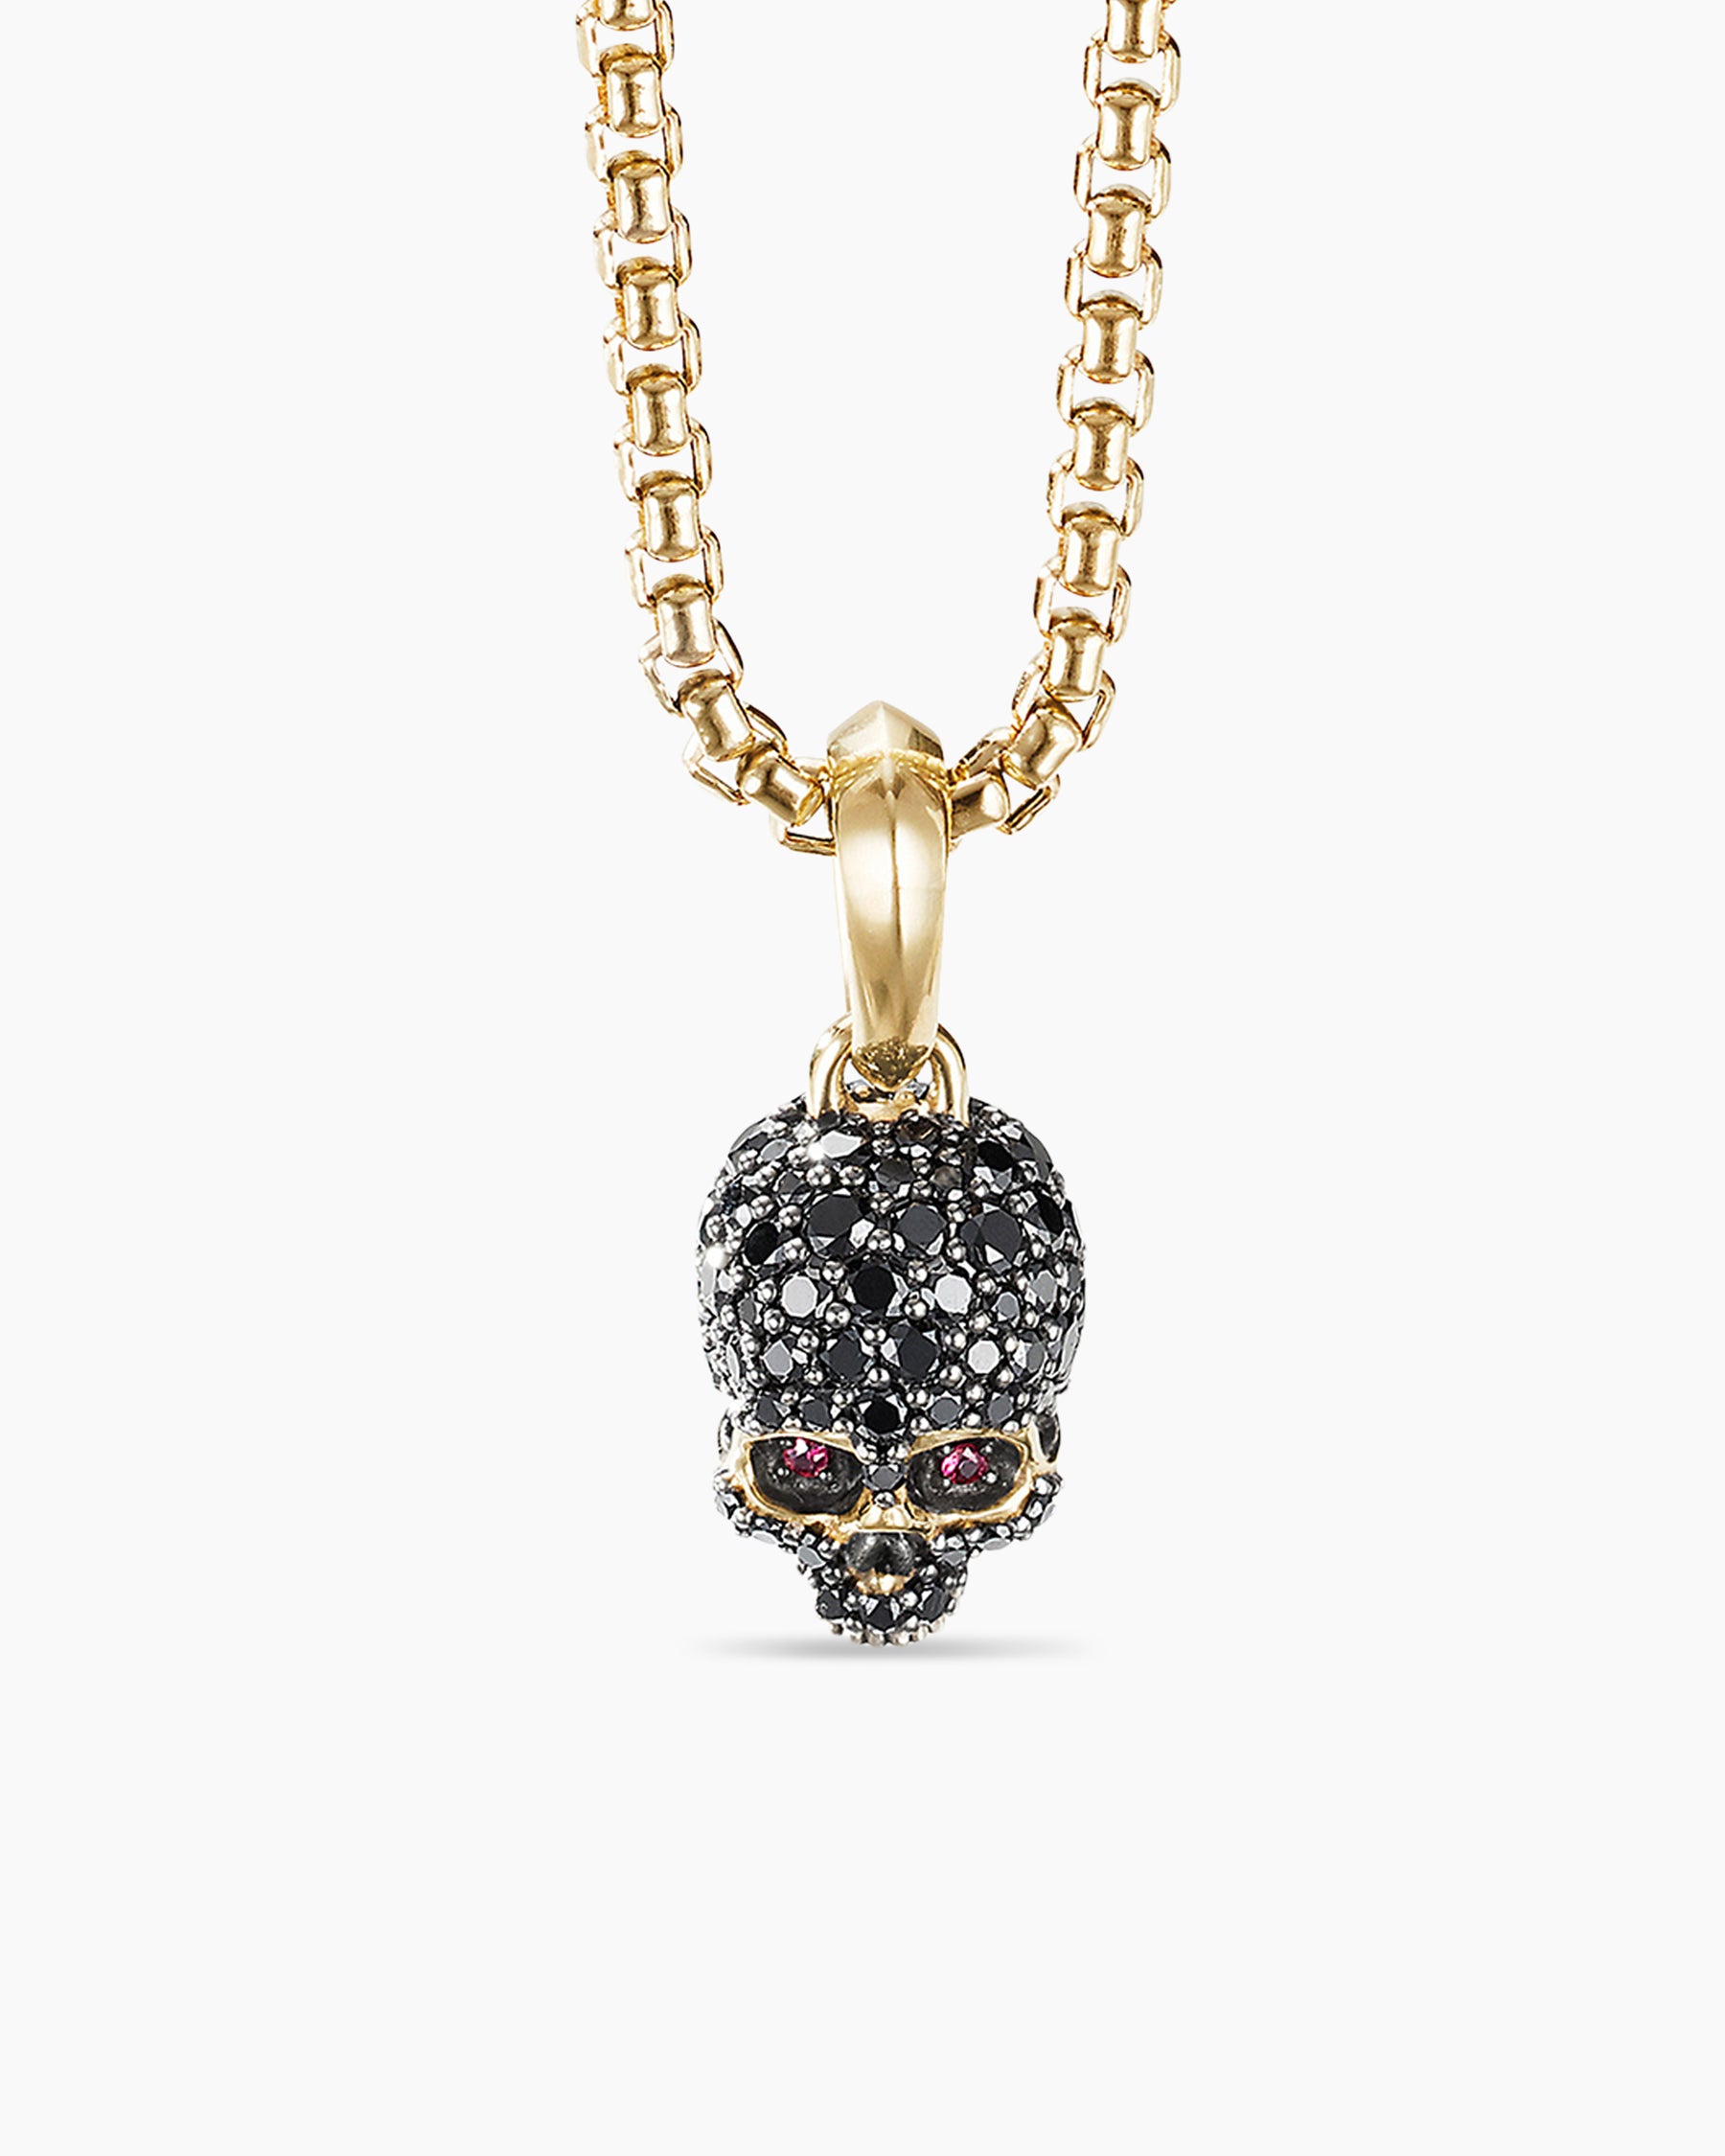 David Yurman Men's Skull Key Pendant with Black Diamonds